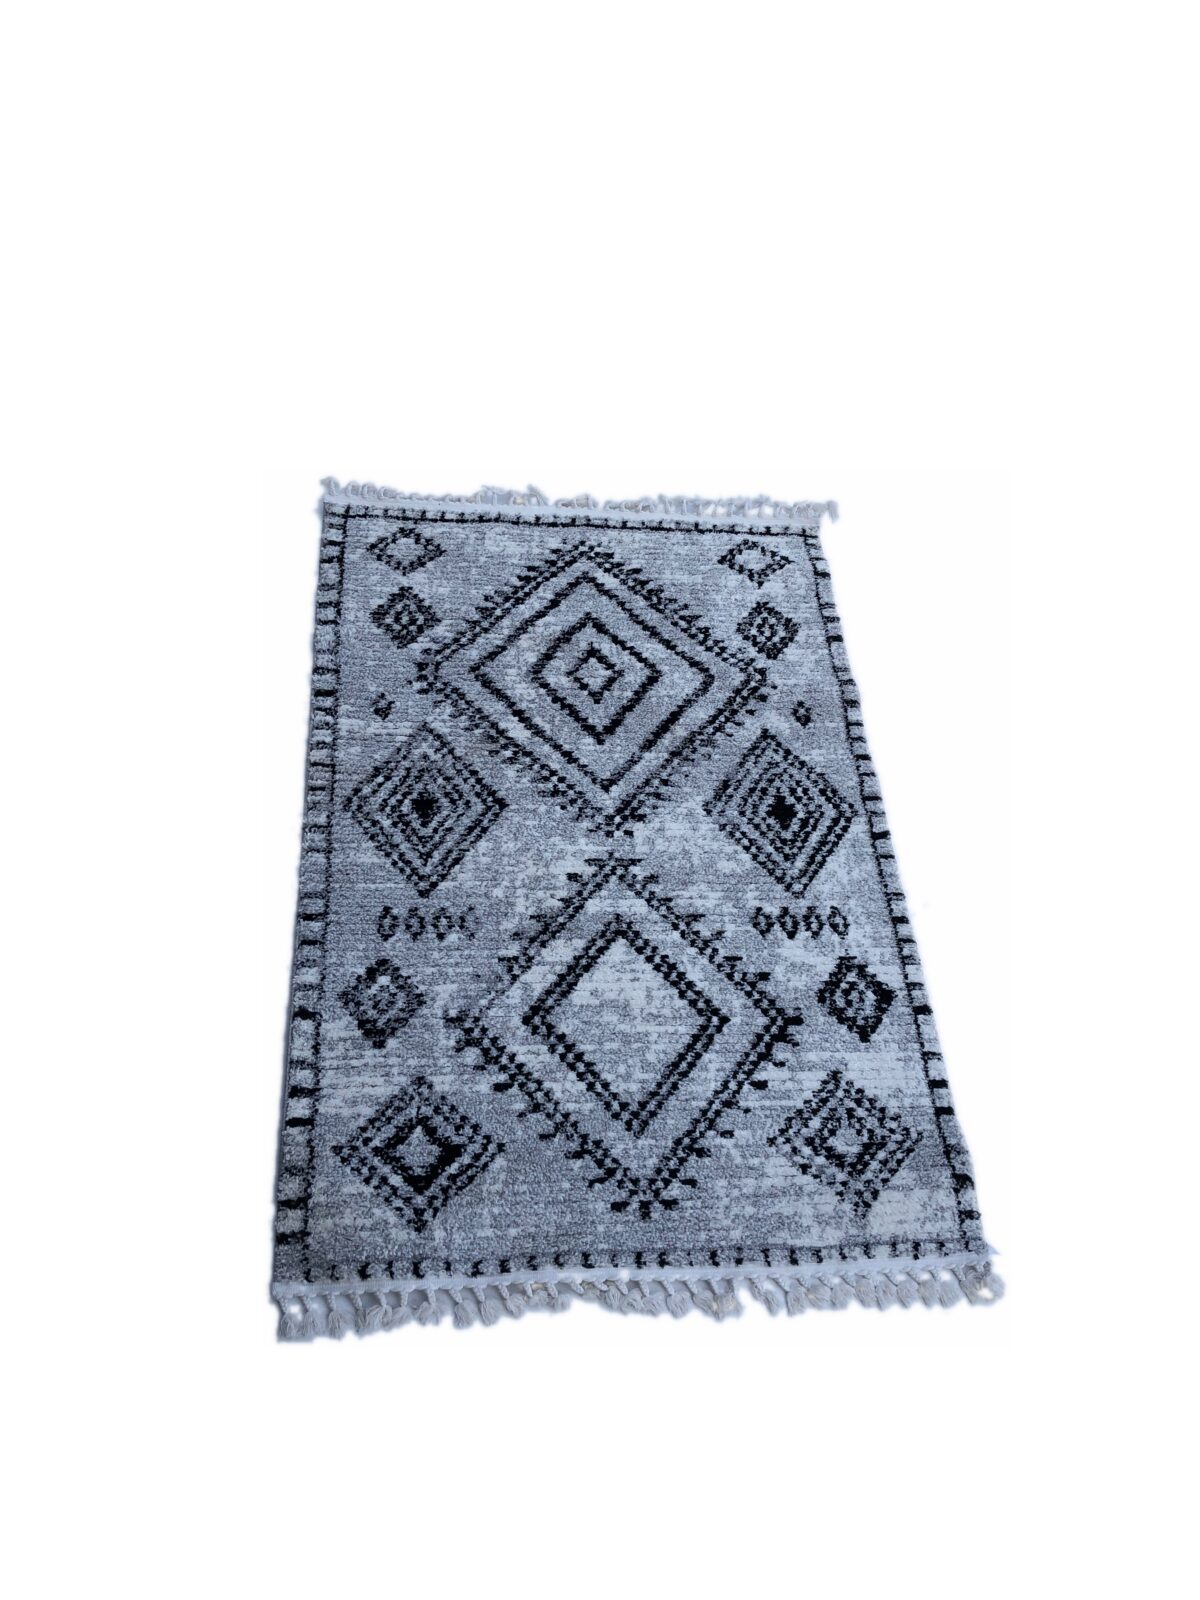 שטיח בדוגמה מרוקאית דגם57